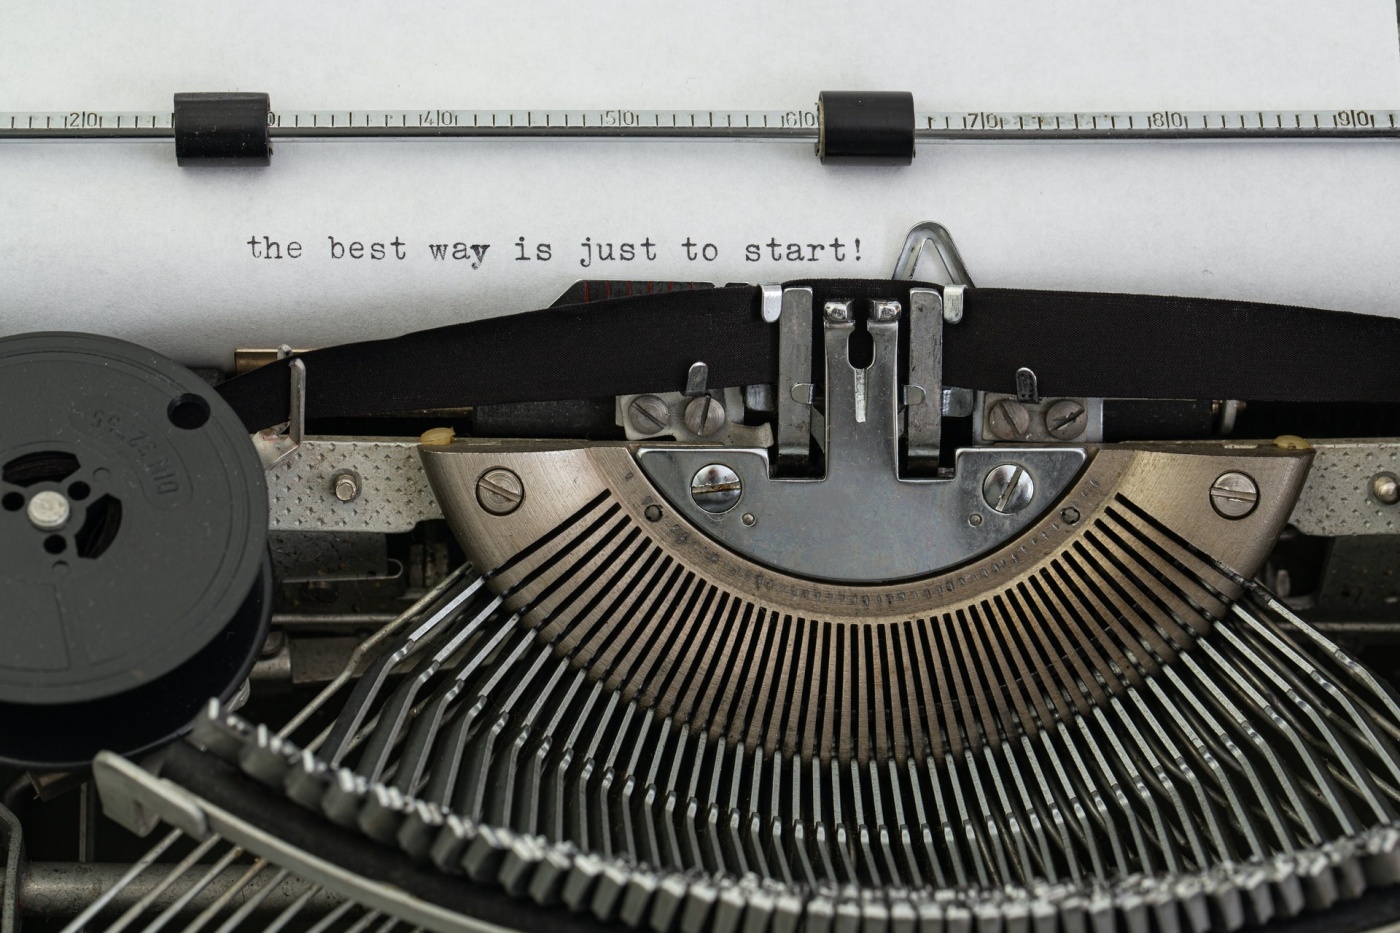 "¡La mejor manera es empezar!" escrito en una máquina de escribir.